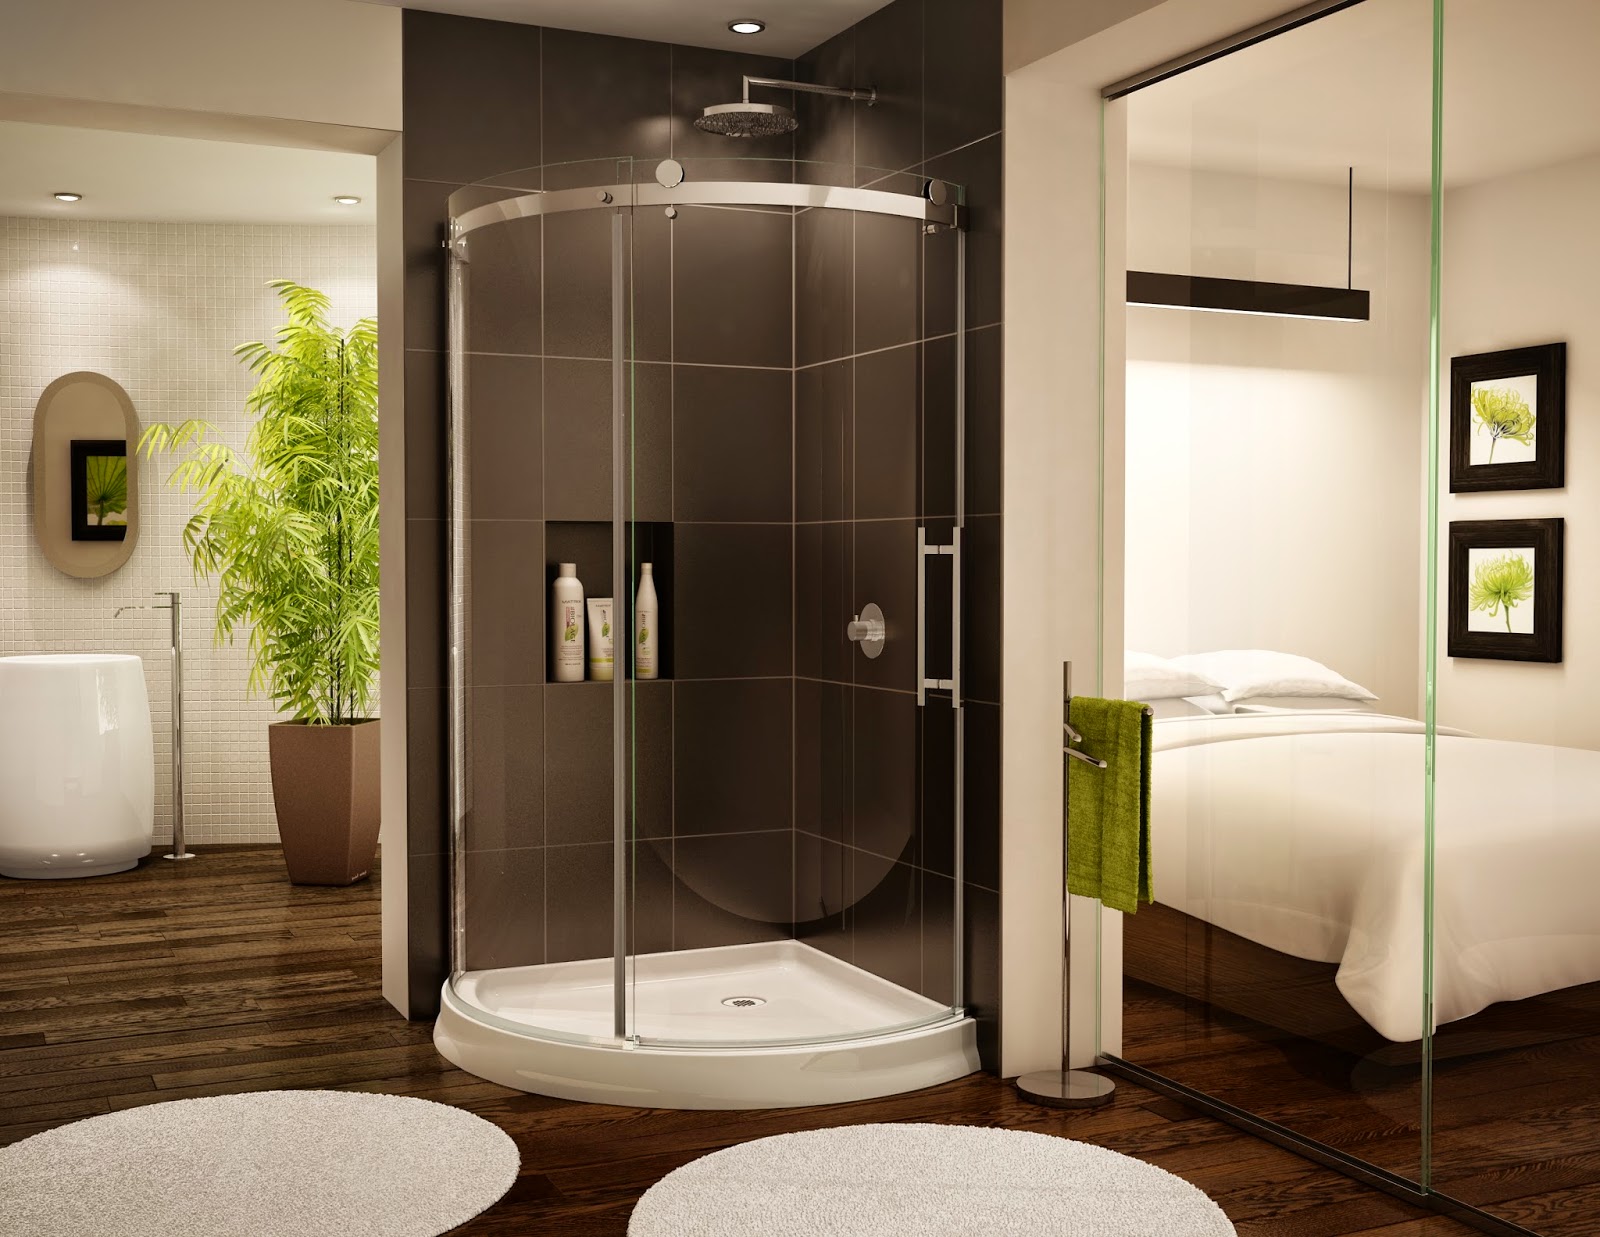 Кабинка в ванную комнату. Шовер Гласс душевые кабины. Душевая кабина Shower Glass. Душевая кабина модель Full Glass Shower Room ks0909 стекло 6мм. Интерьер ванной комнаты с душевой кабиной.